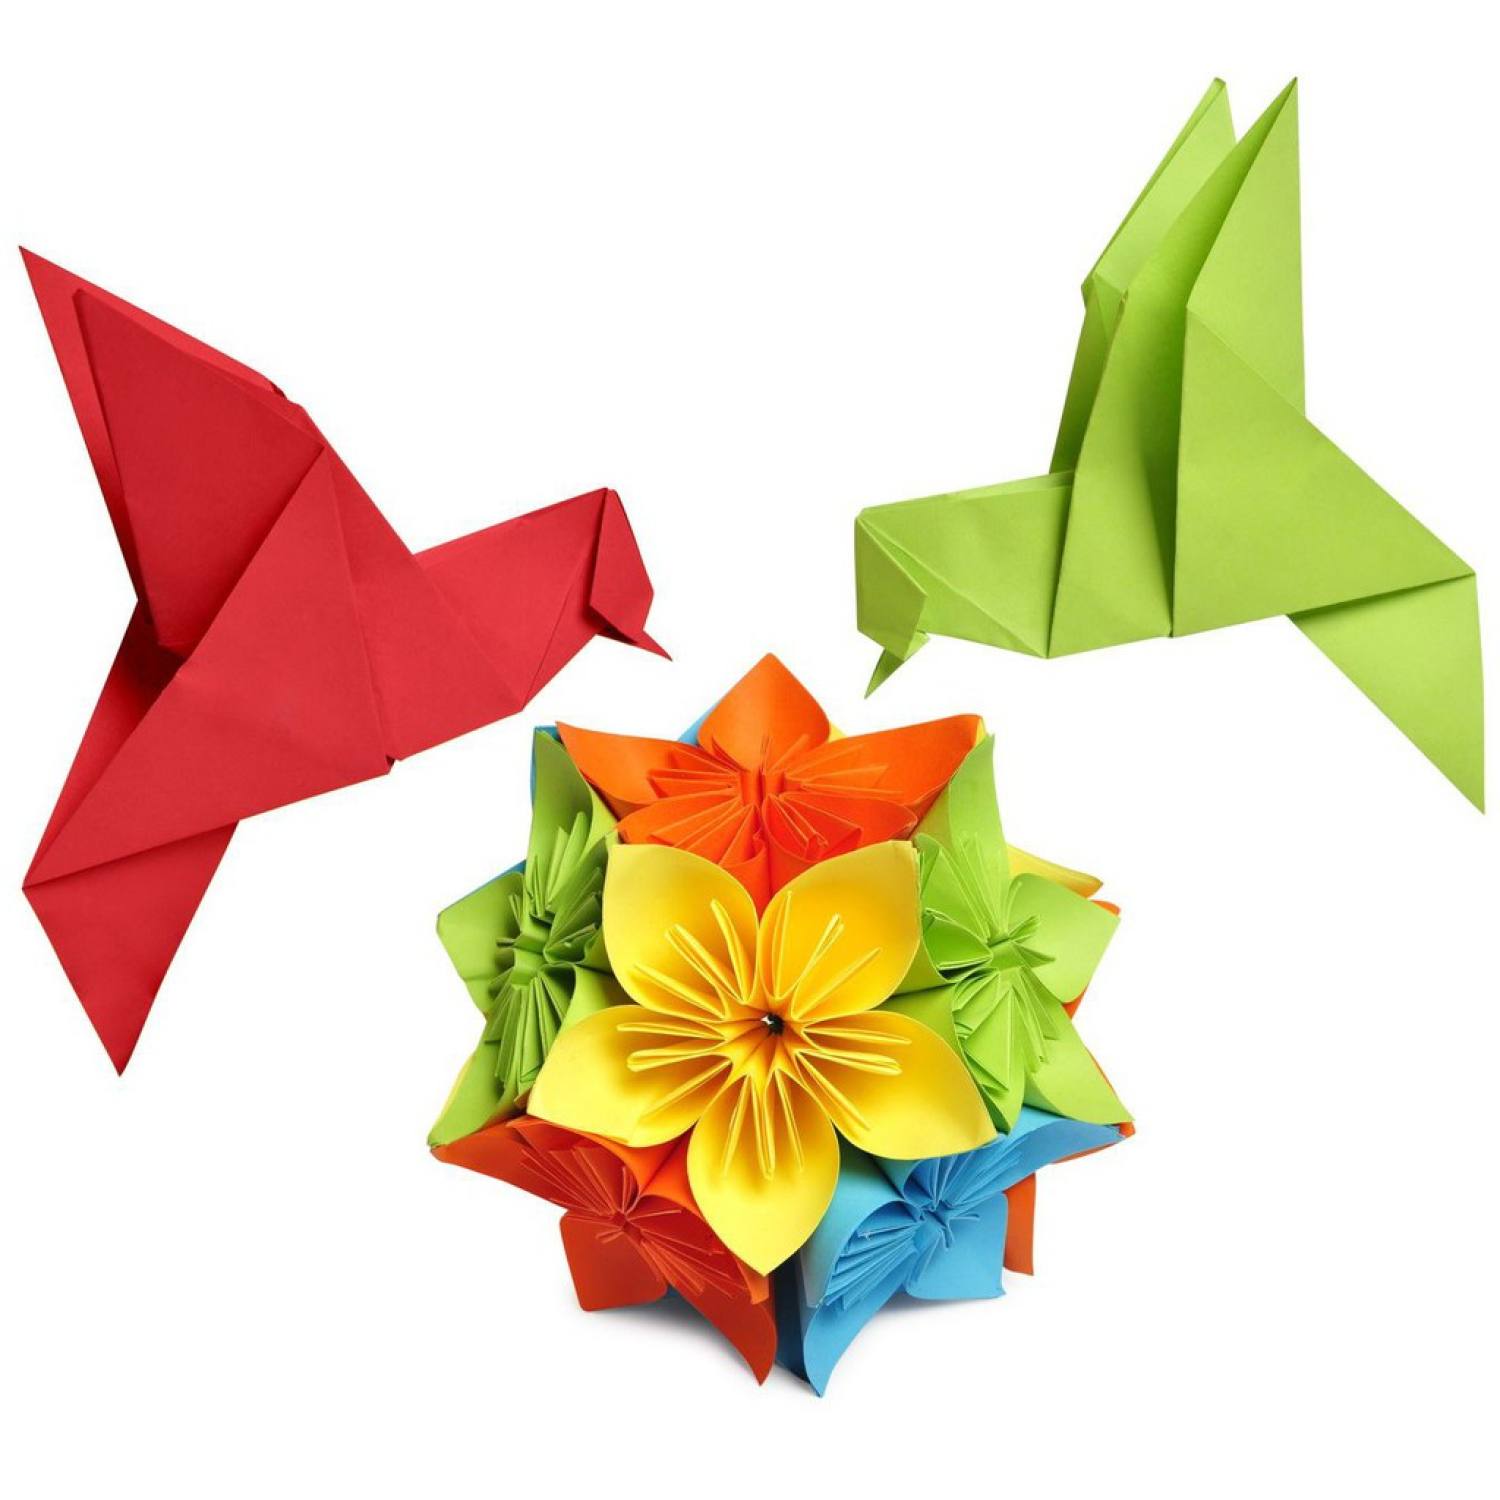 Giấy Thủ Công Origami size Cực Đại 17x17cm, 100 tờ Đủ Màu, Giấy Xếp Cò siêu tiết kiệm